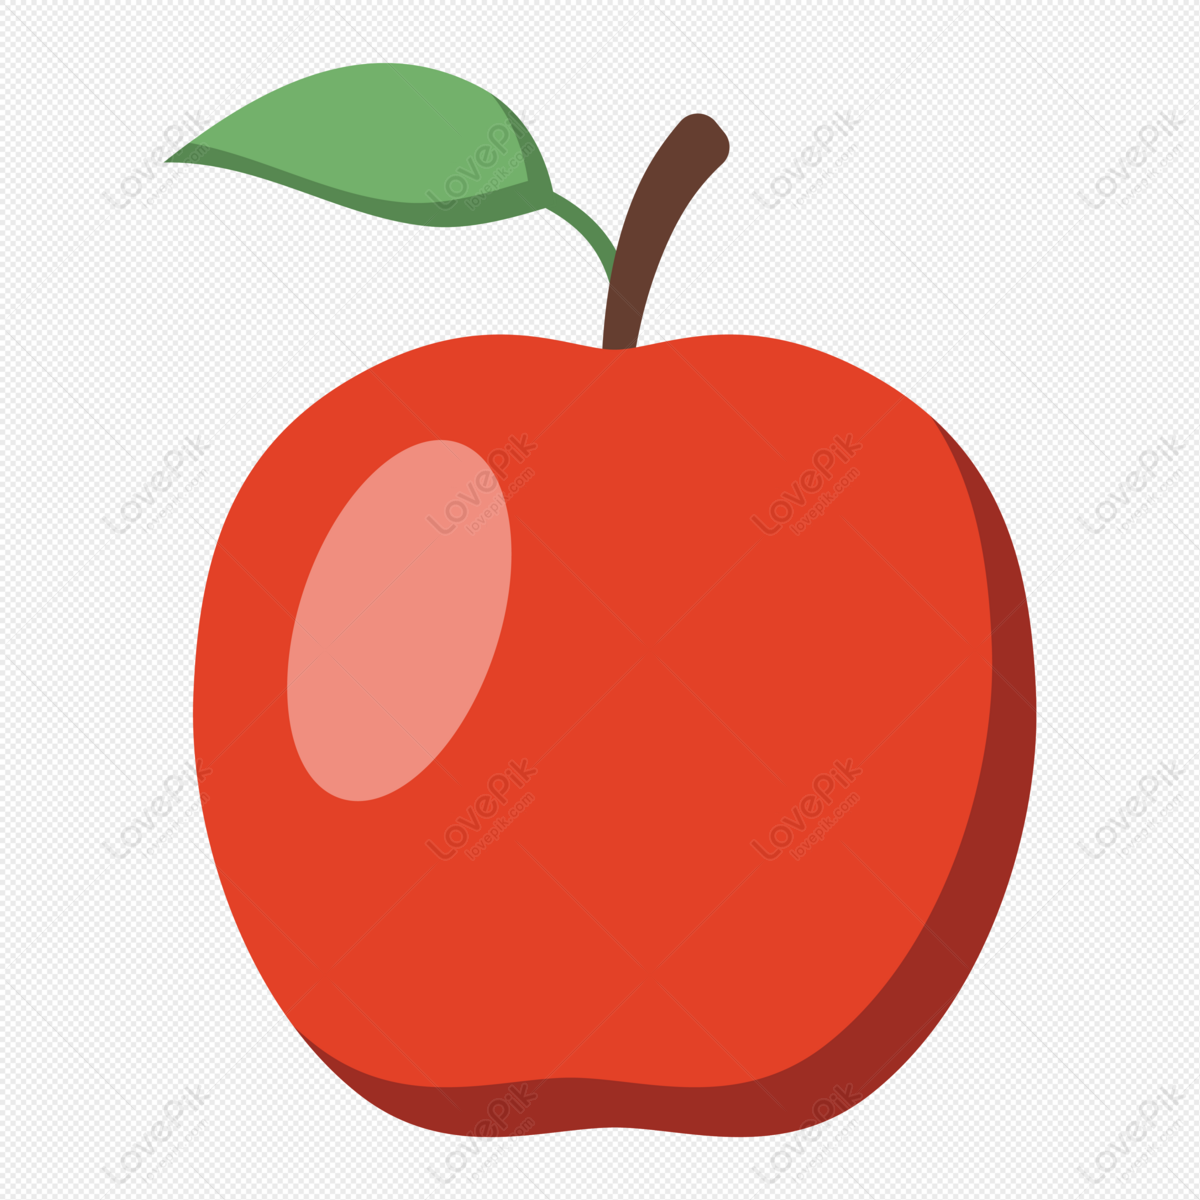 Quả táo là một loại trái cây ngon và bổ dưỡng, có nhiều cách để sử dụng như ăn tươi, ép nước, làm bánh và nhiều hơn thế nữa. Hãy xem hình ảnh liên quan để khám phá thế giới của quả táo và tìm ra cách sử dụng phù hợp nhất với sở thích của bạn.